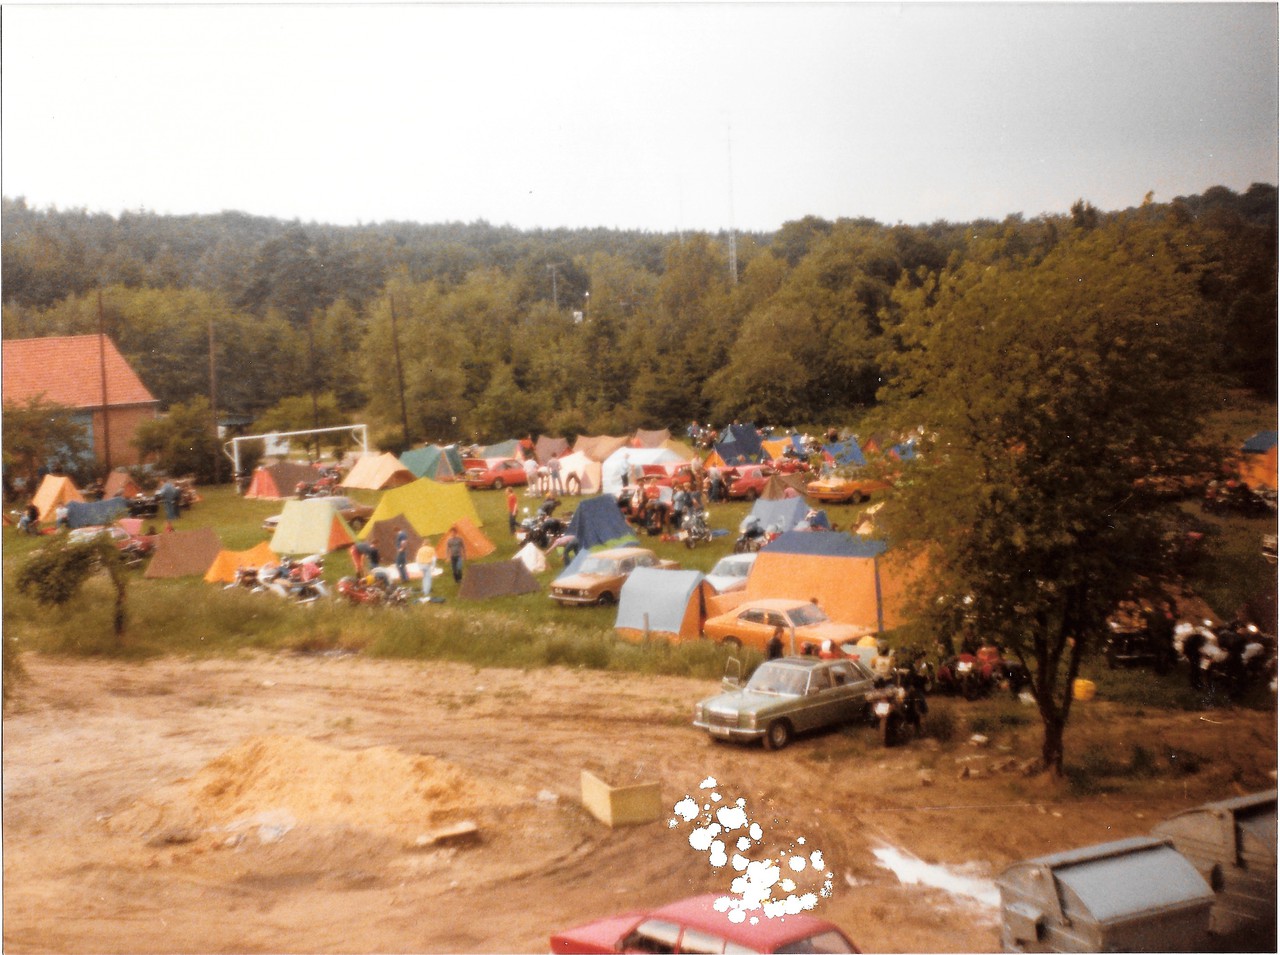 Bolderberg nostalgie: kamperen tijdens de legendarische grote prijs circuit Zolder